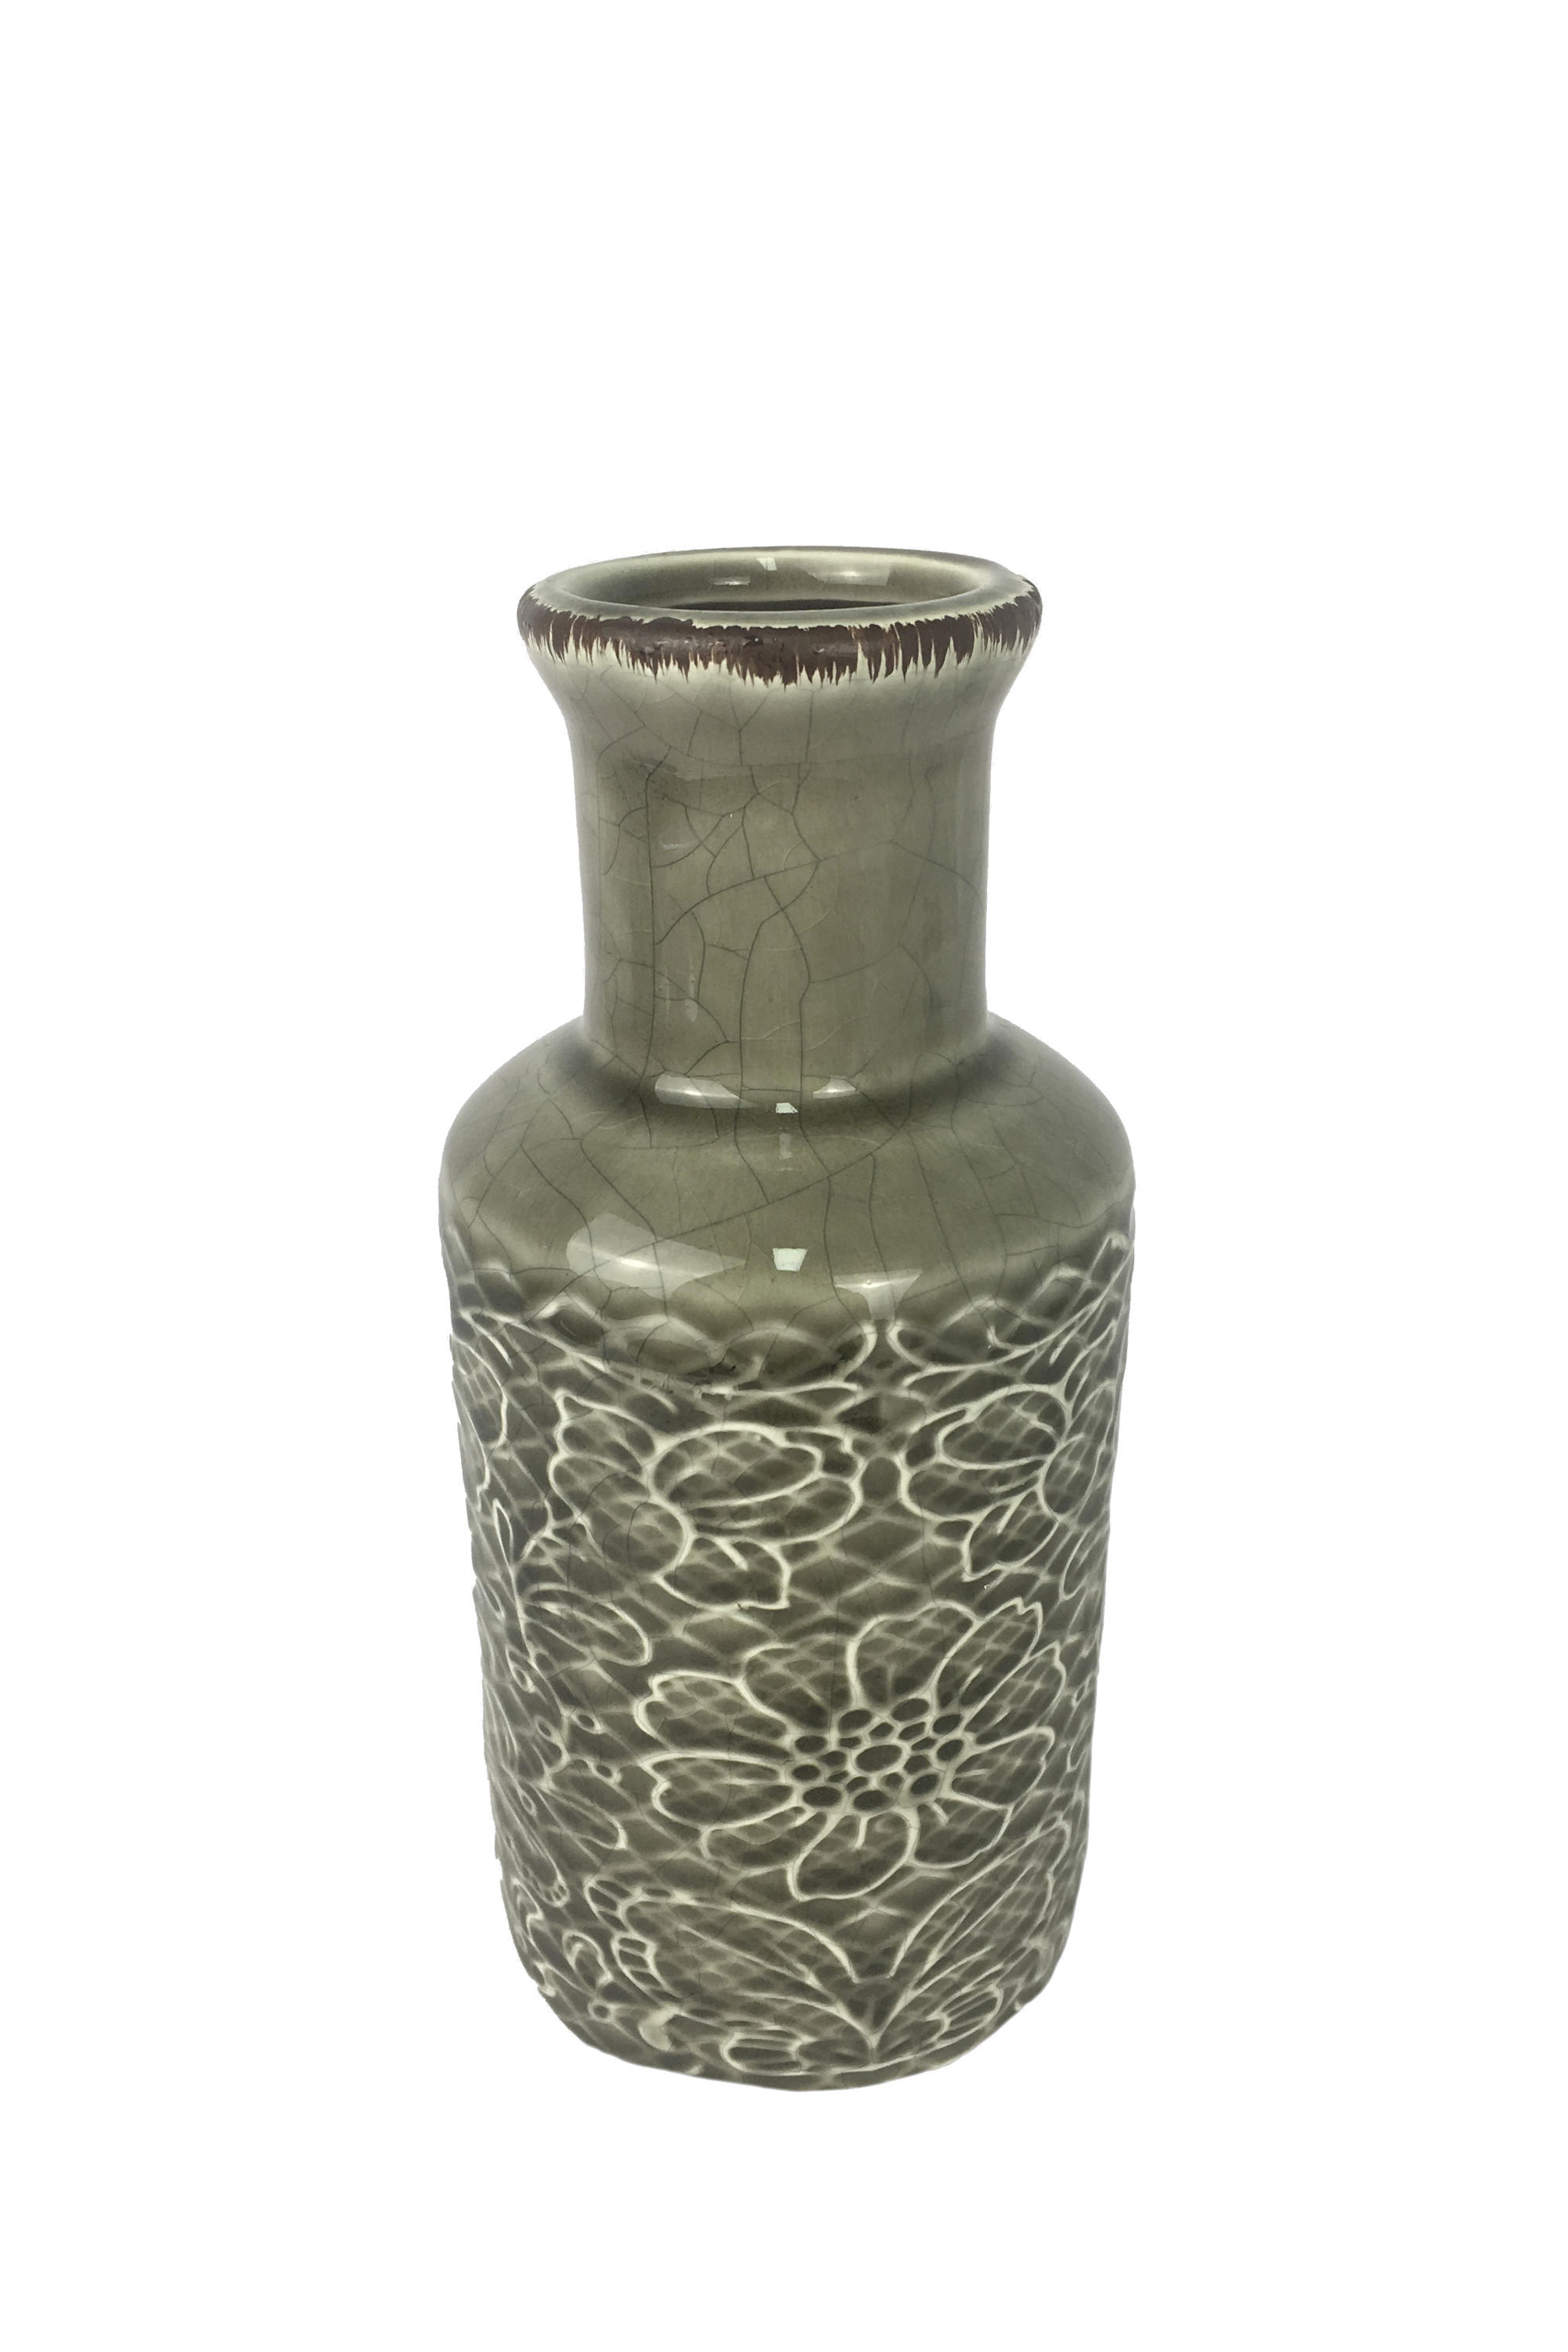 VÁZA, keramika, 18,5 cm - šedá